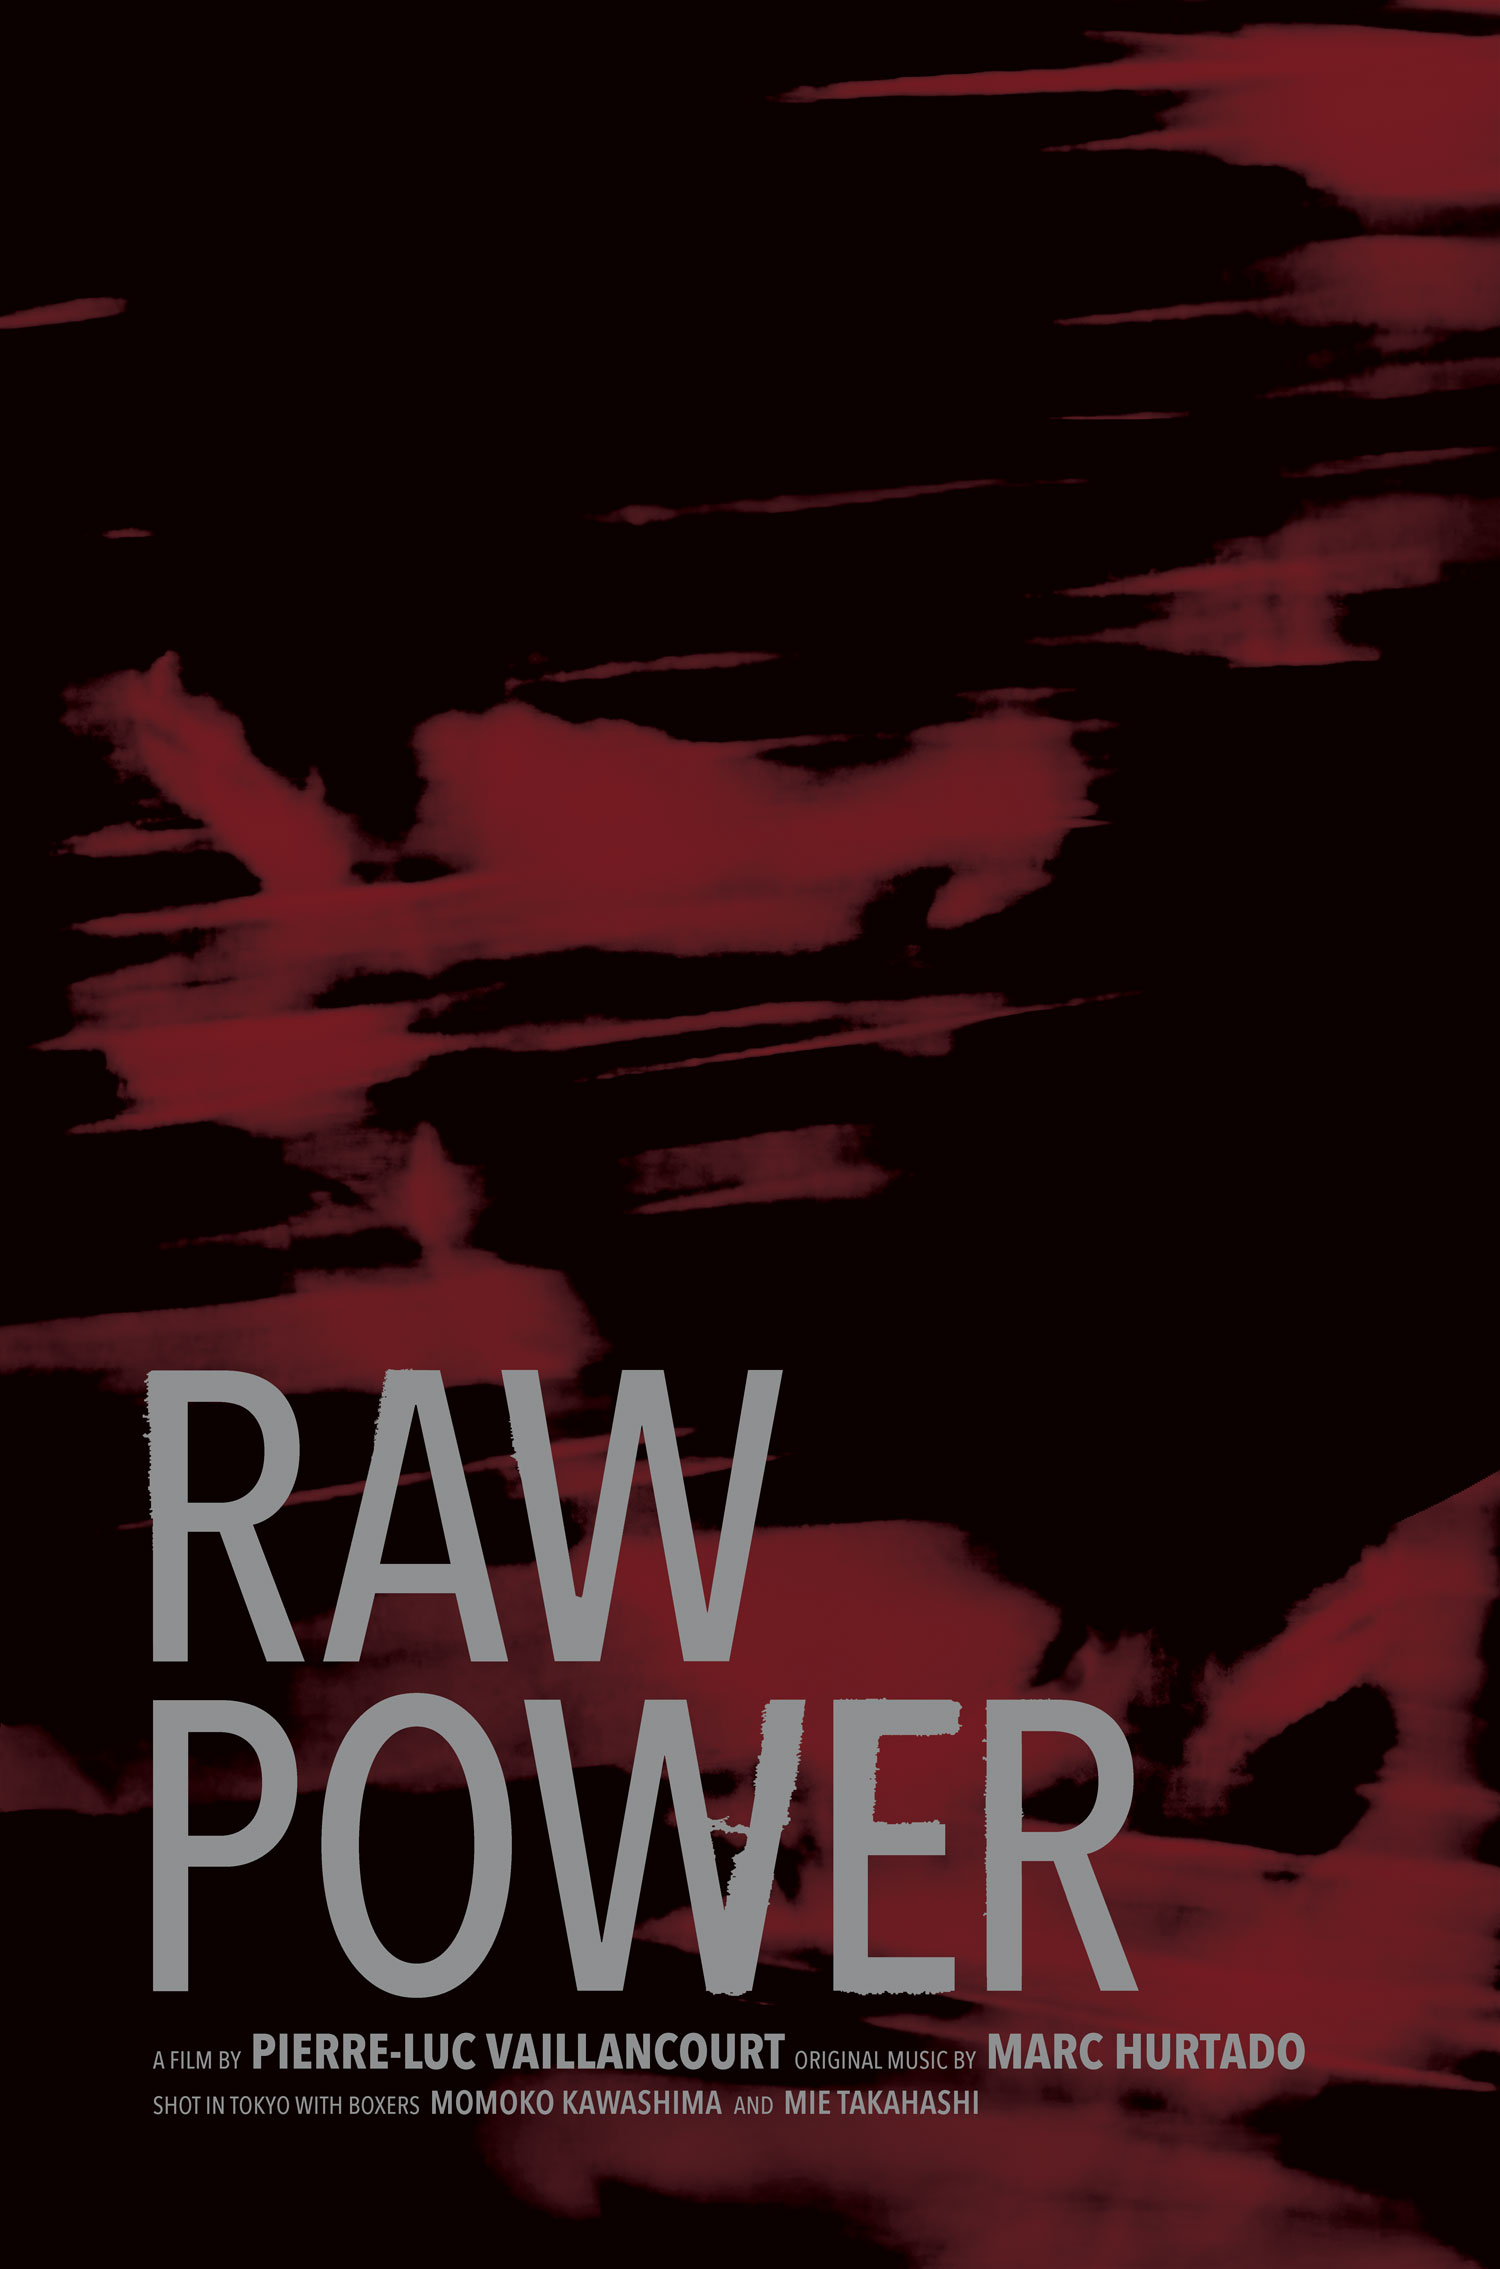 Raw Power (2020) du réalisateur PIERRE-LUC VAILLANCOURT